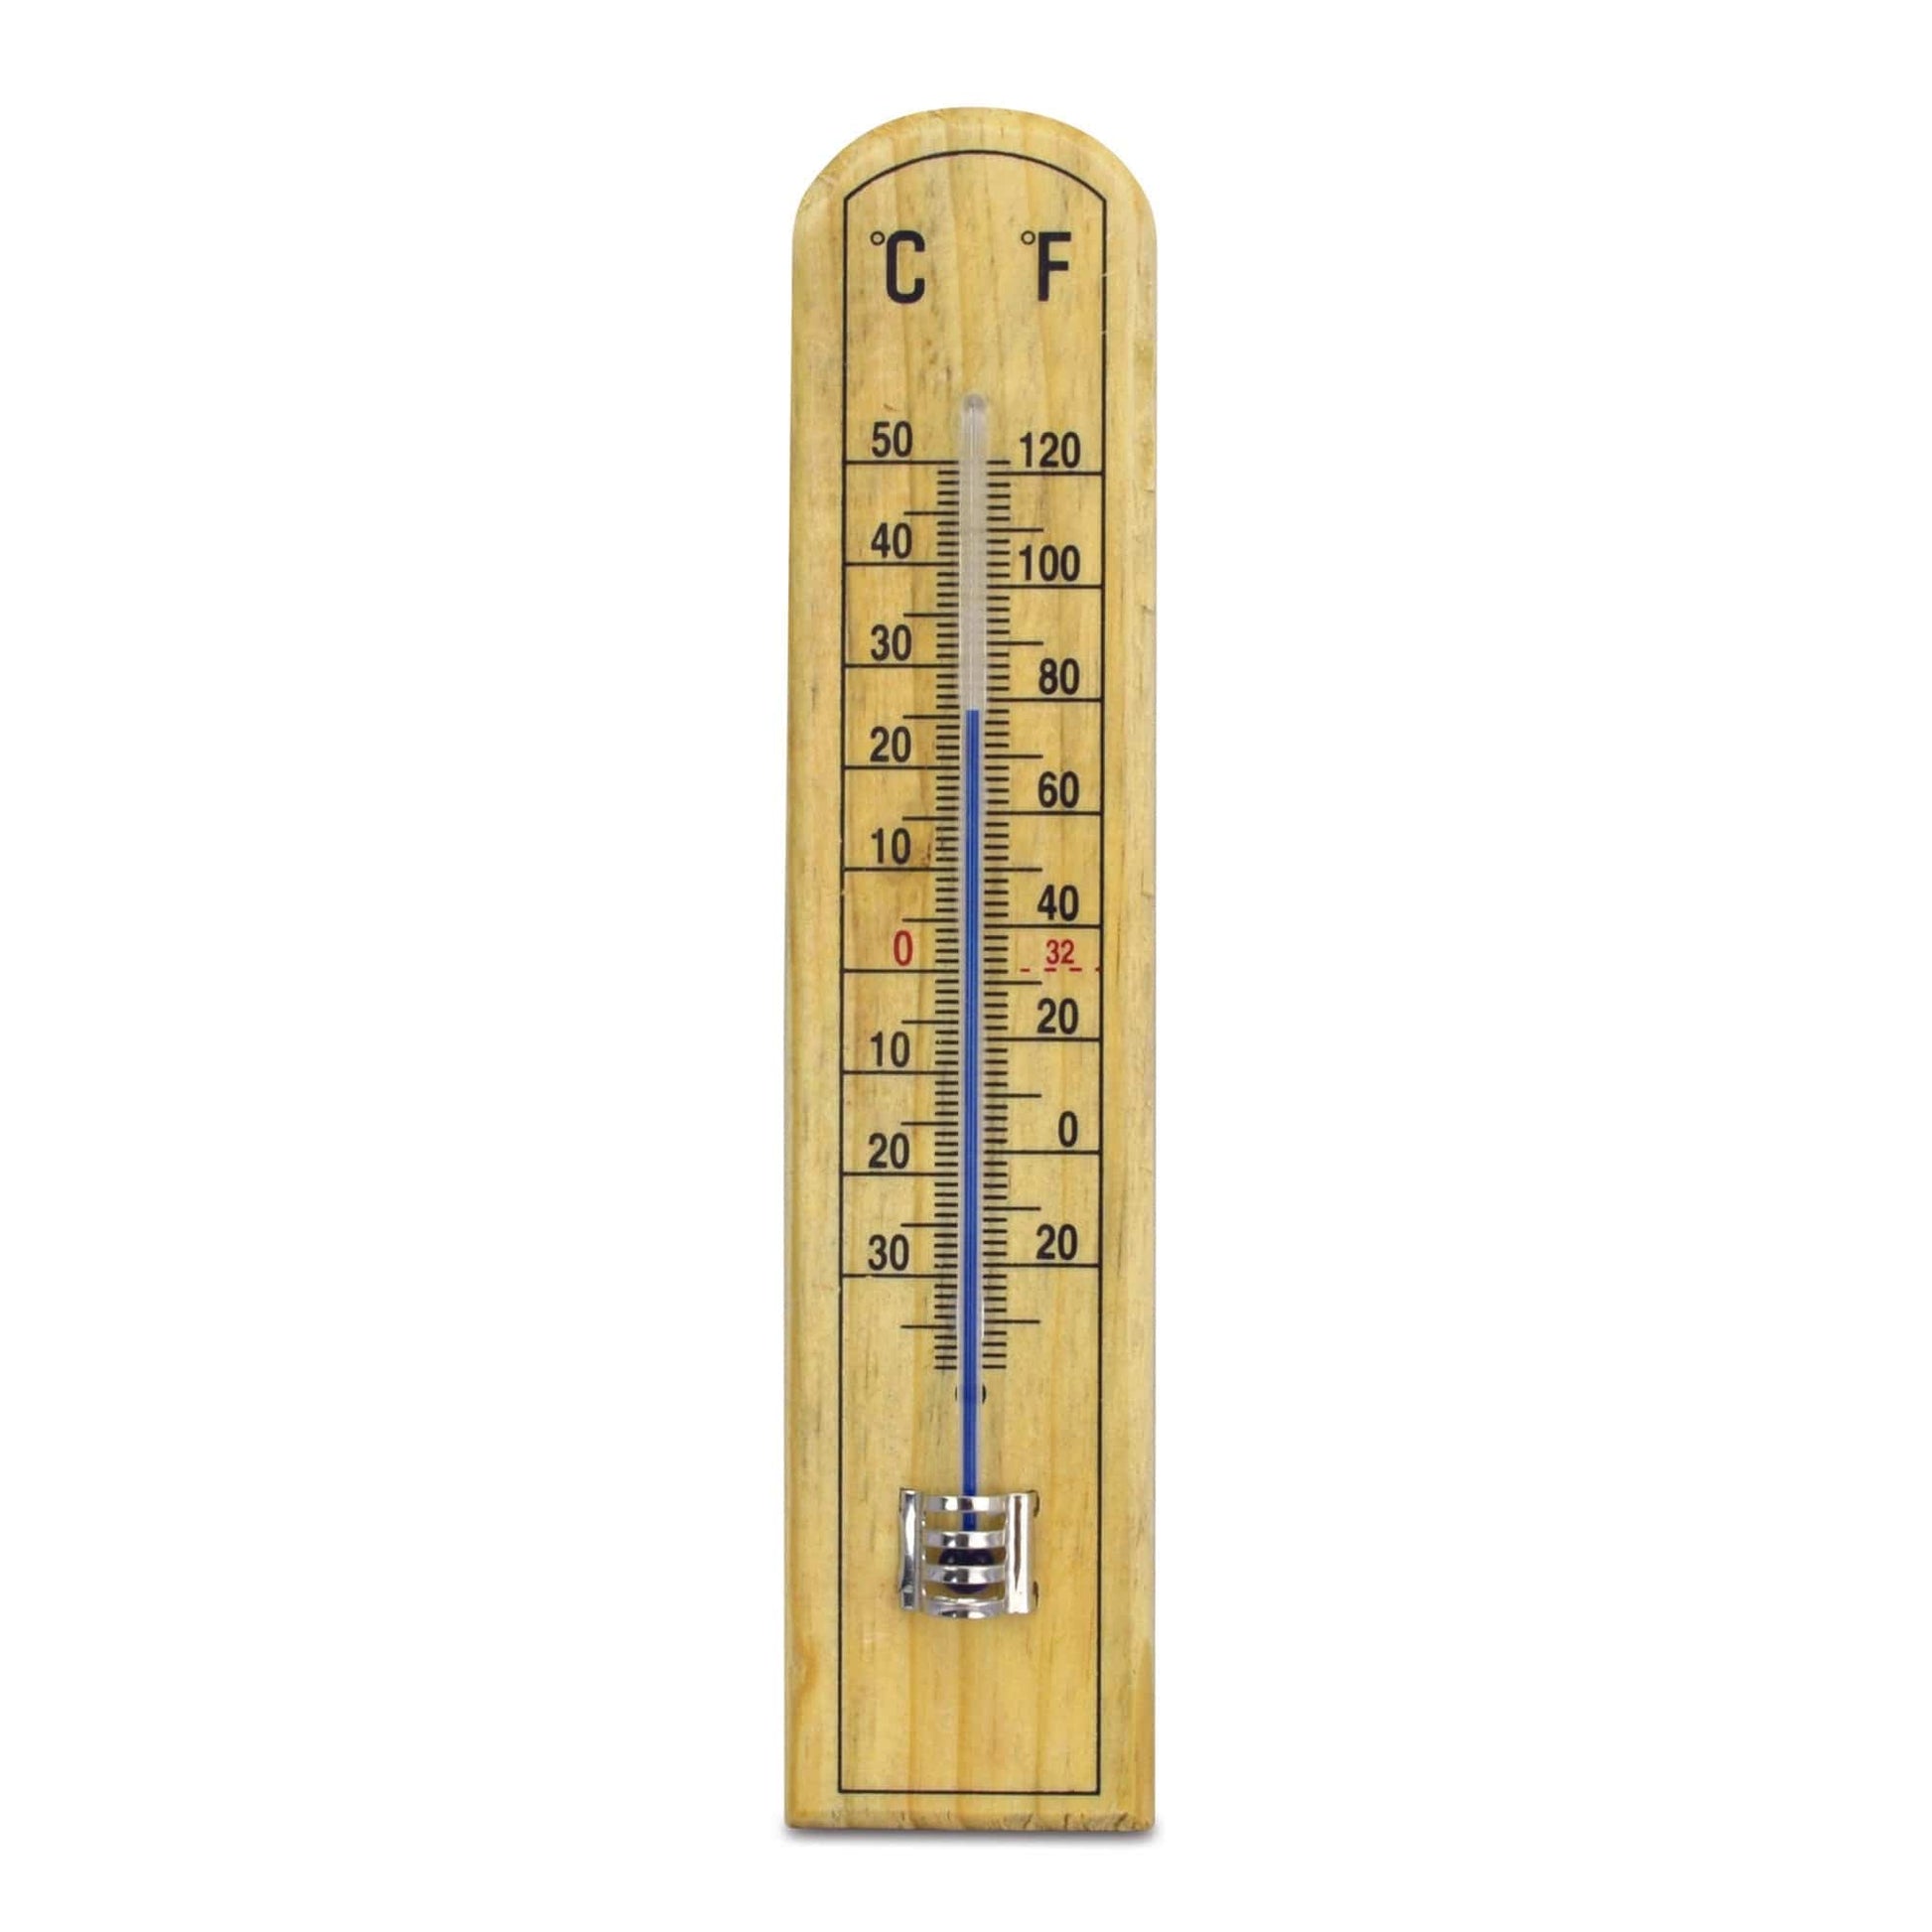 Un Thermomètre en hêtre - 45 x 205 mm par Thermometer.eu sur fond blanc.